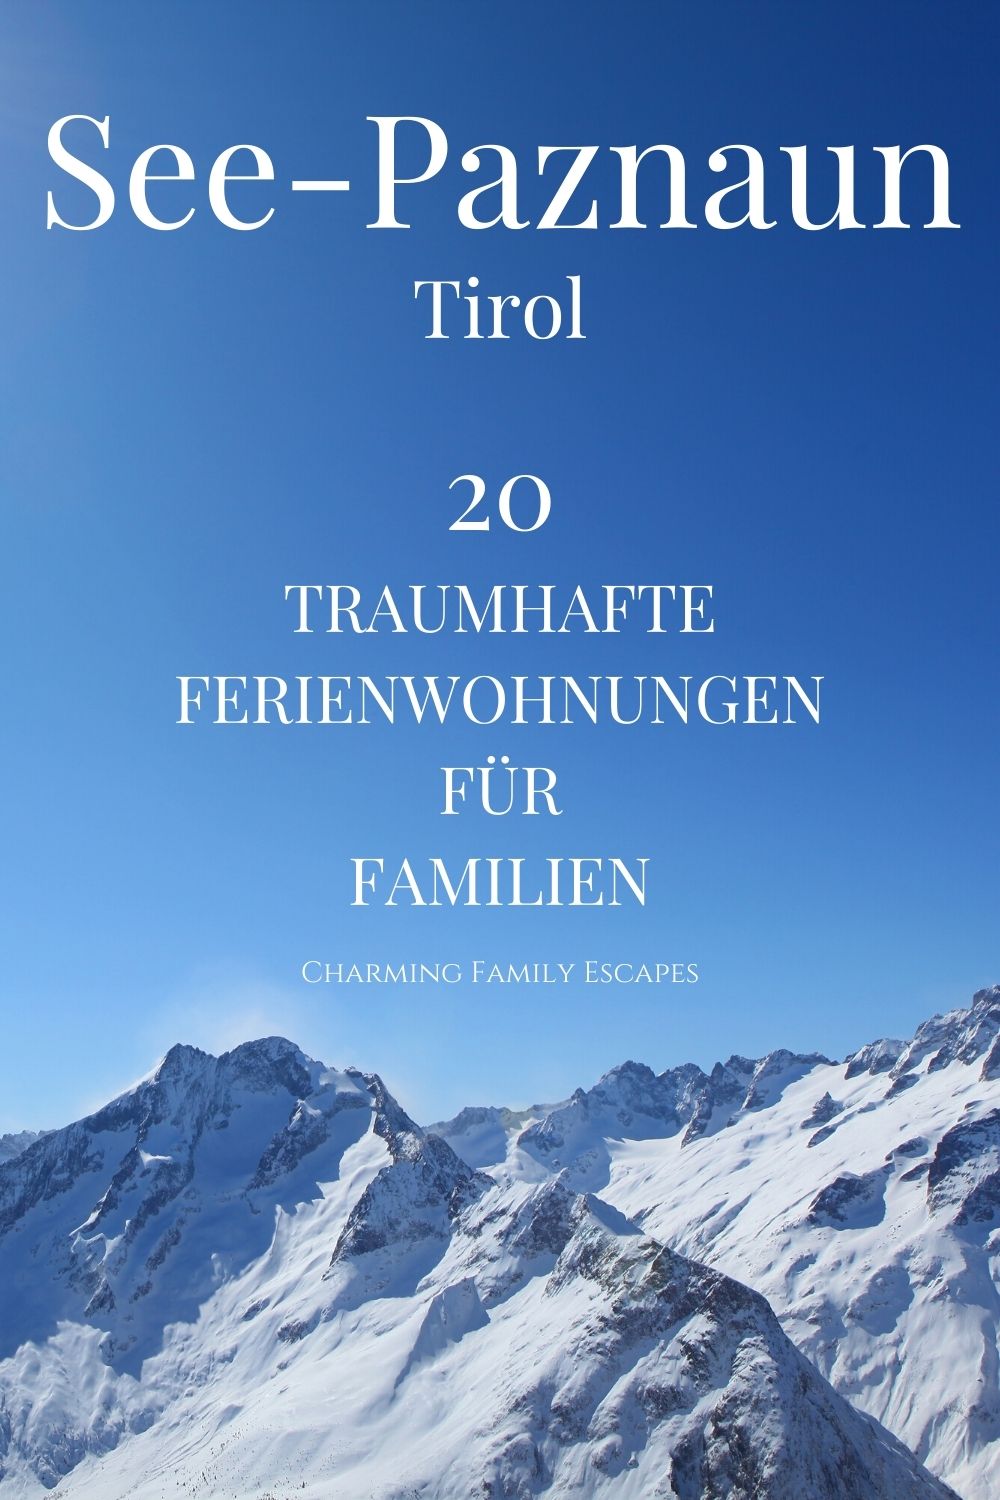 20 traumhafte Ferienwohnungen für Familien in See, Paznaun, Tirol, Österreich.